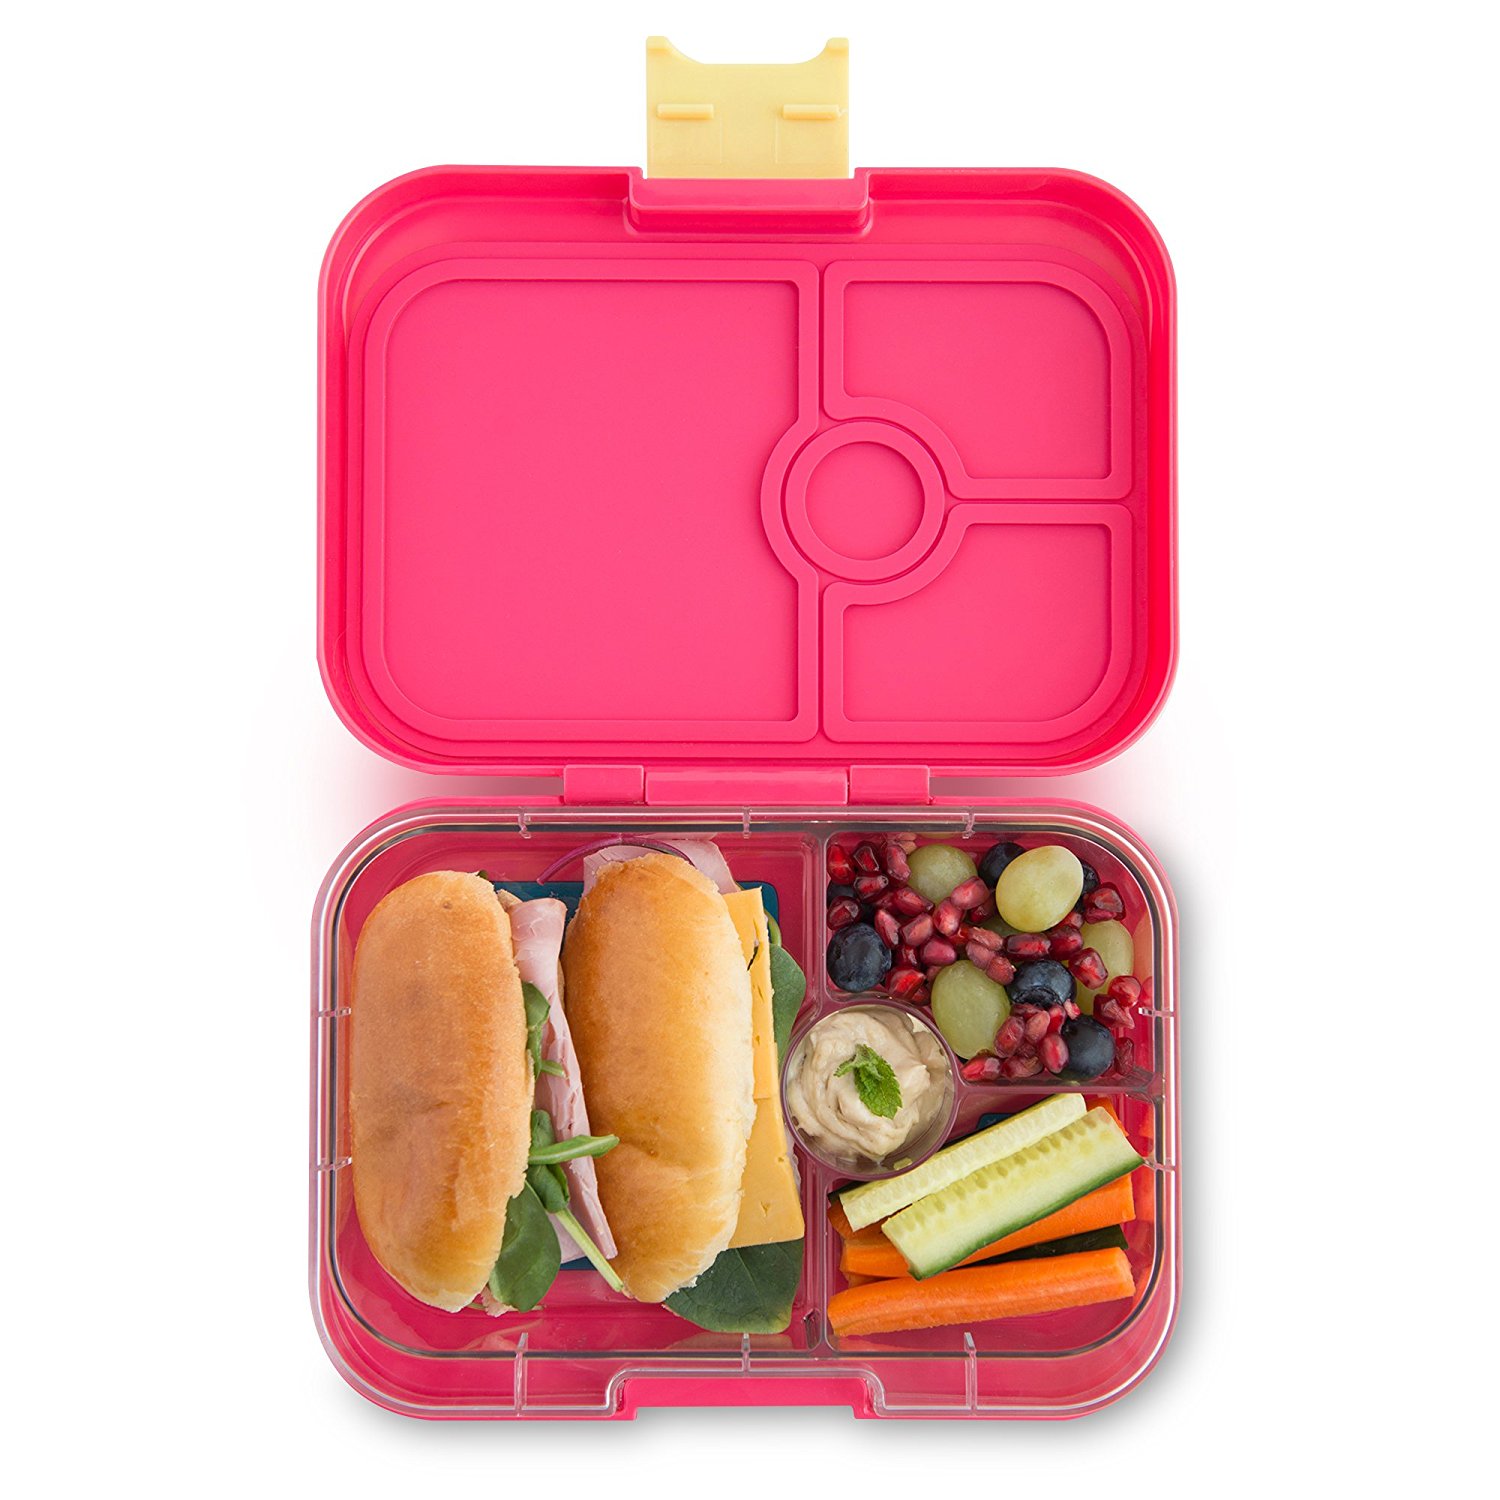 Yumbox lunch box